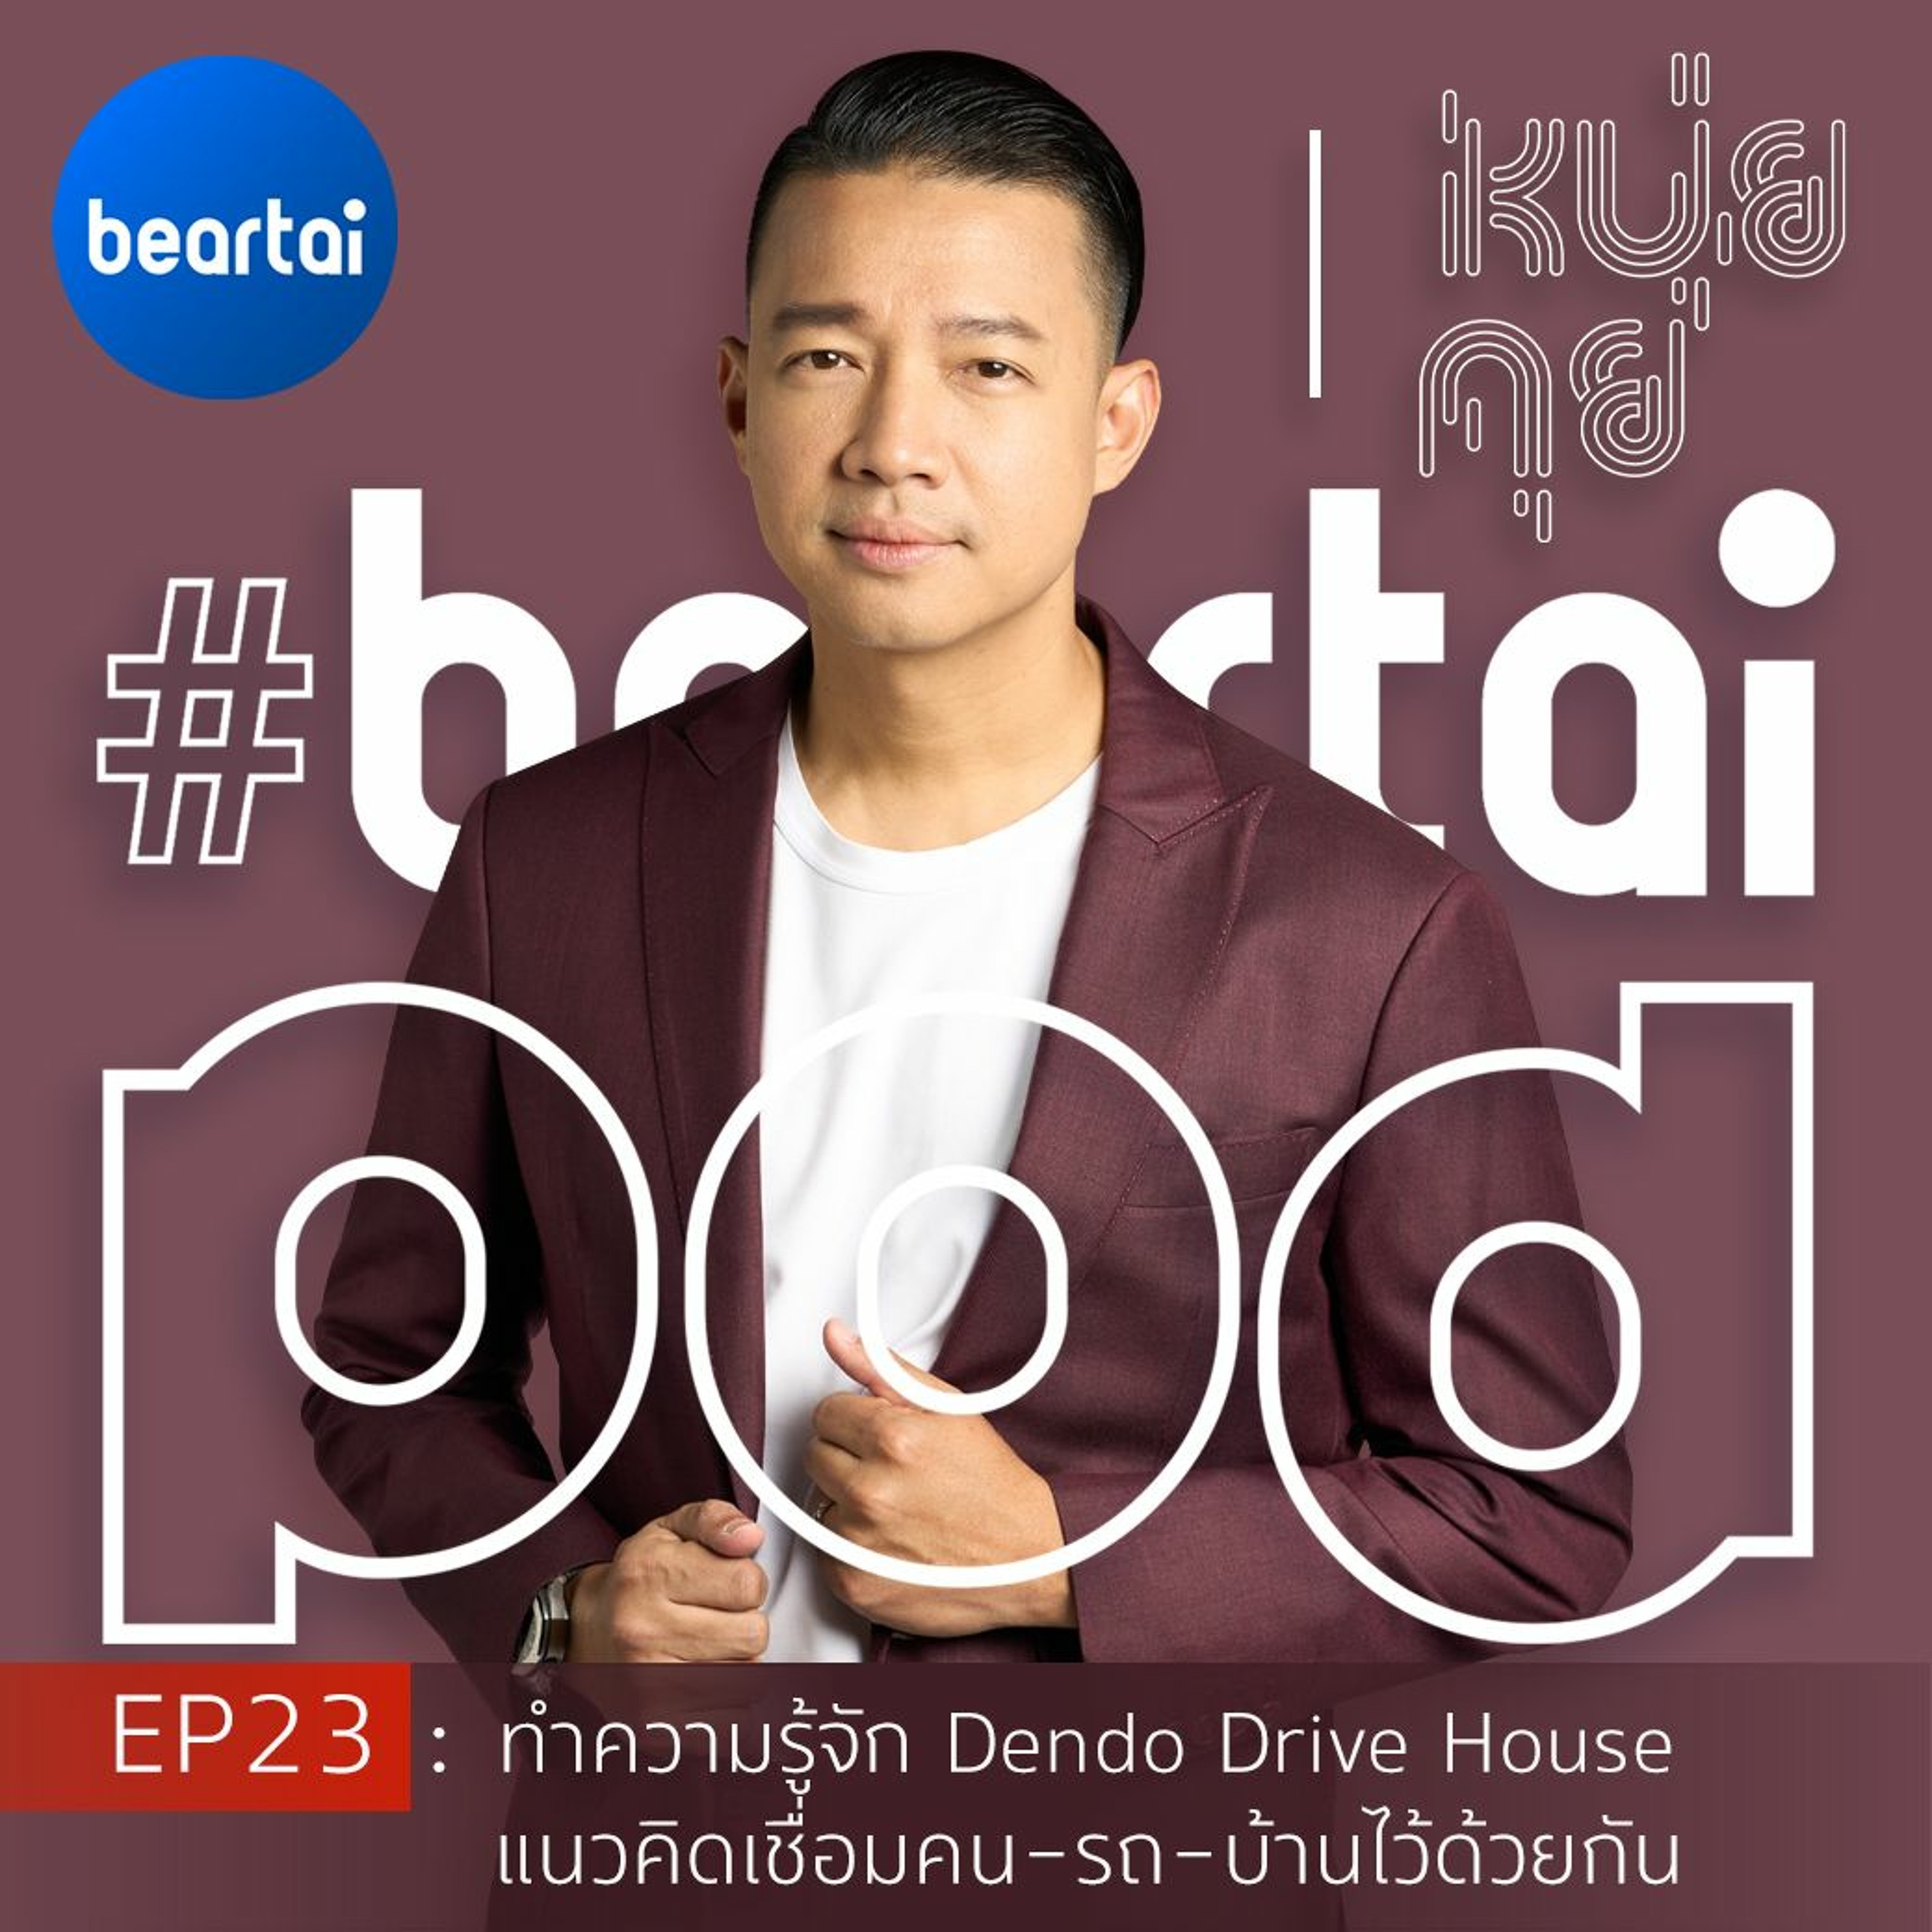 หนุ่ยคุย EP23 : ทำความรู้จัก Dendo Drive House แนวคิดเชื่อมคน-รถ-บ้านไว้ด้วยกัน